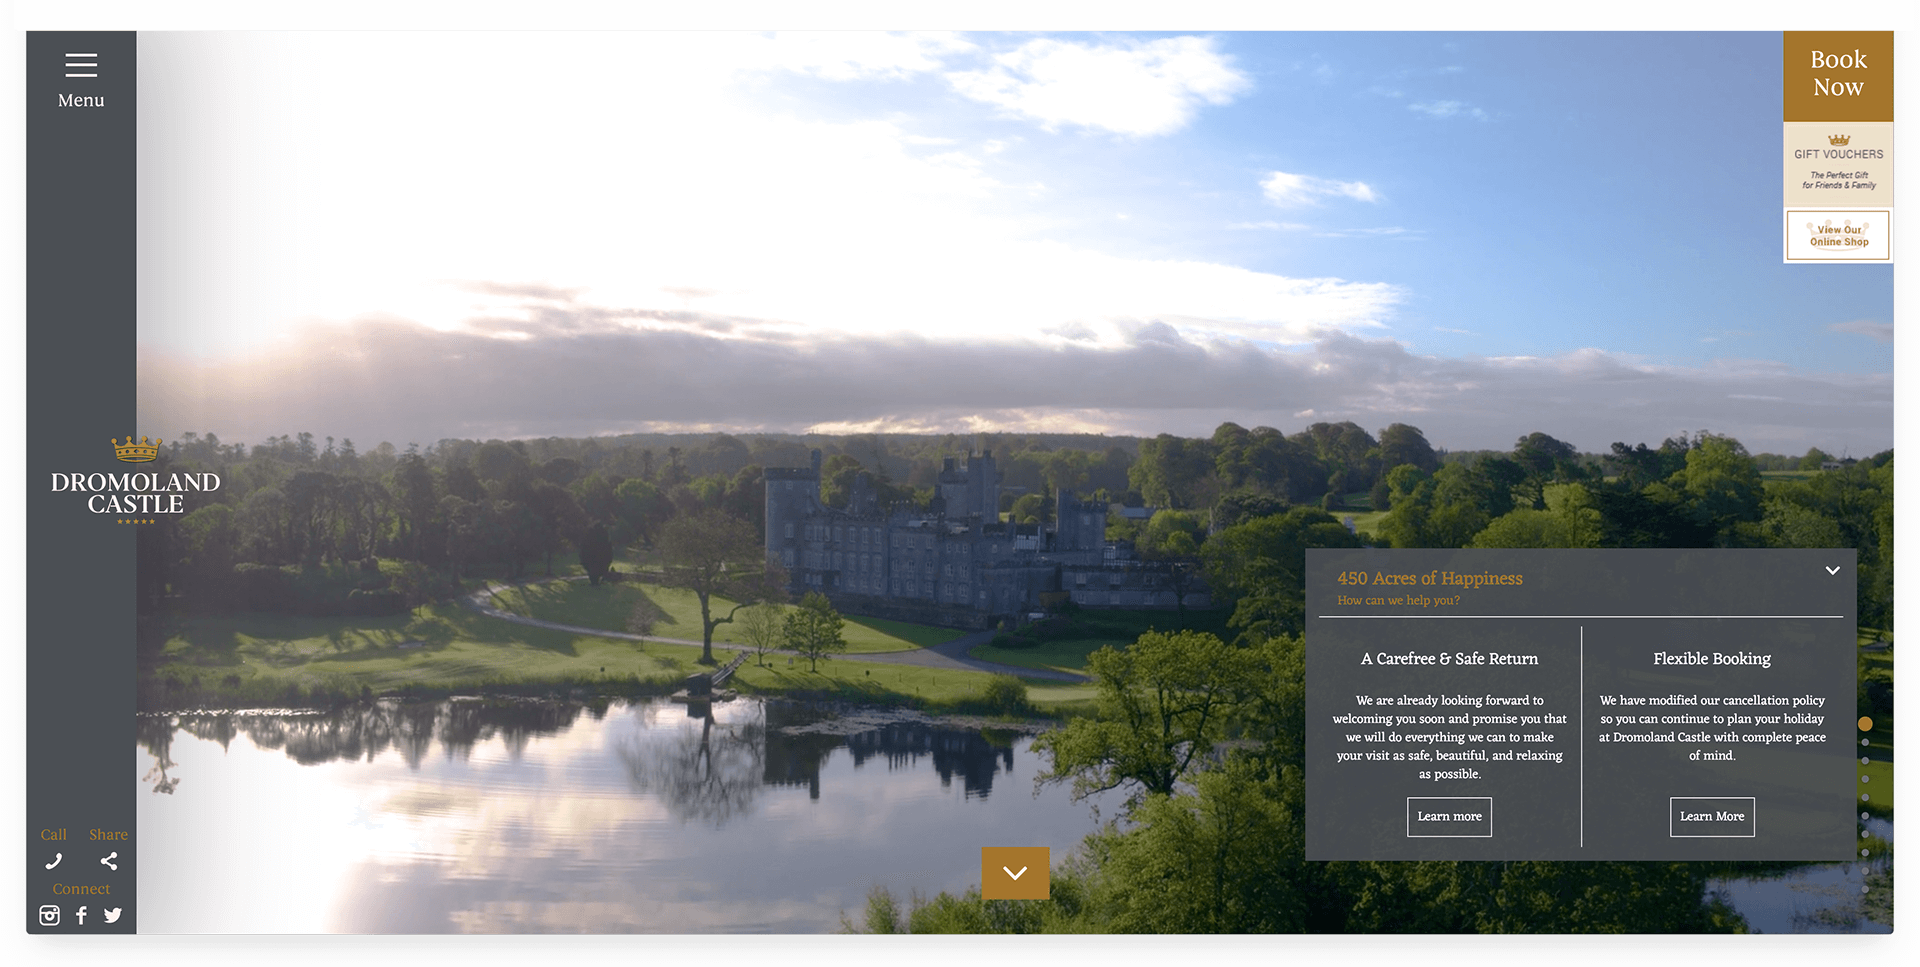 Dromoland Castle Website